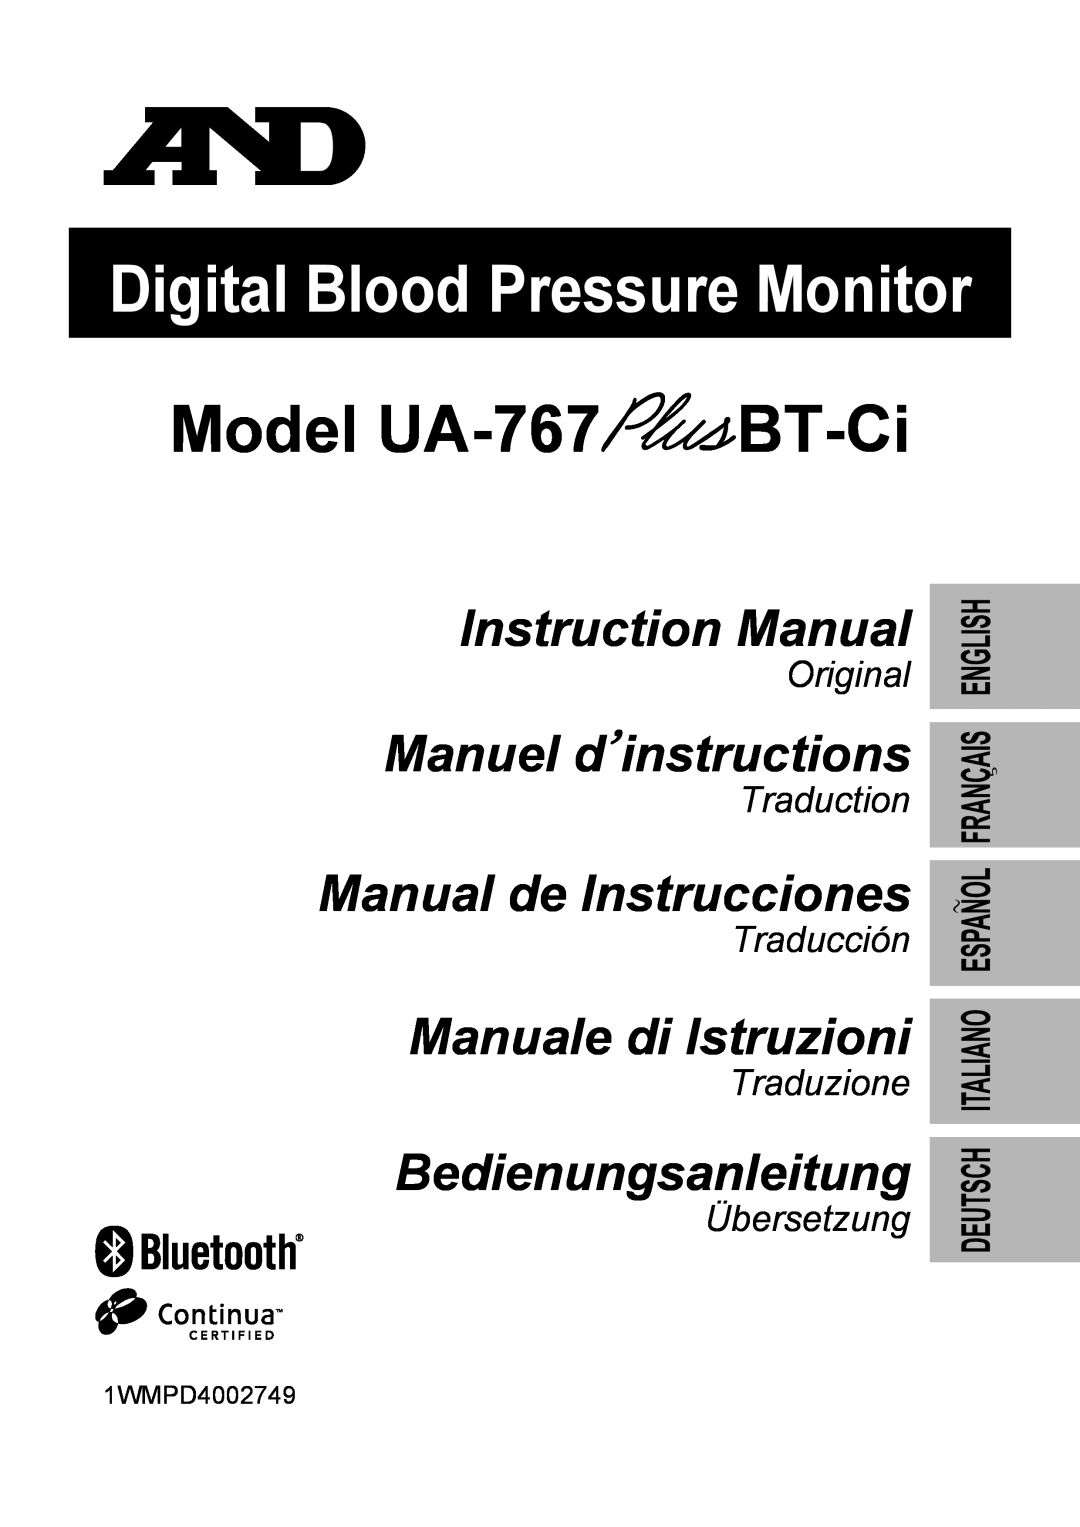 A&D instruction manual Model UA-767BT-Ci, Digital Blood Pressure Monitor, Instruction Manual, Manuel d’instructions 